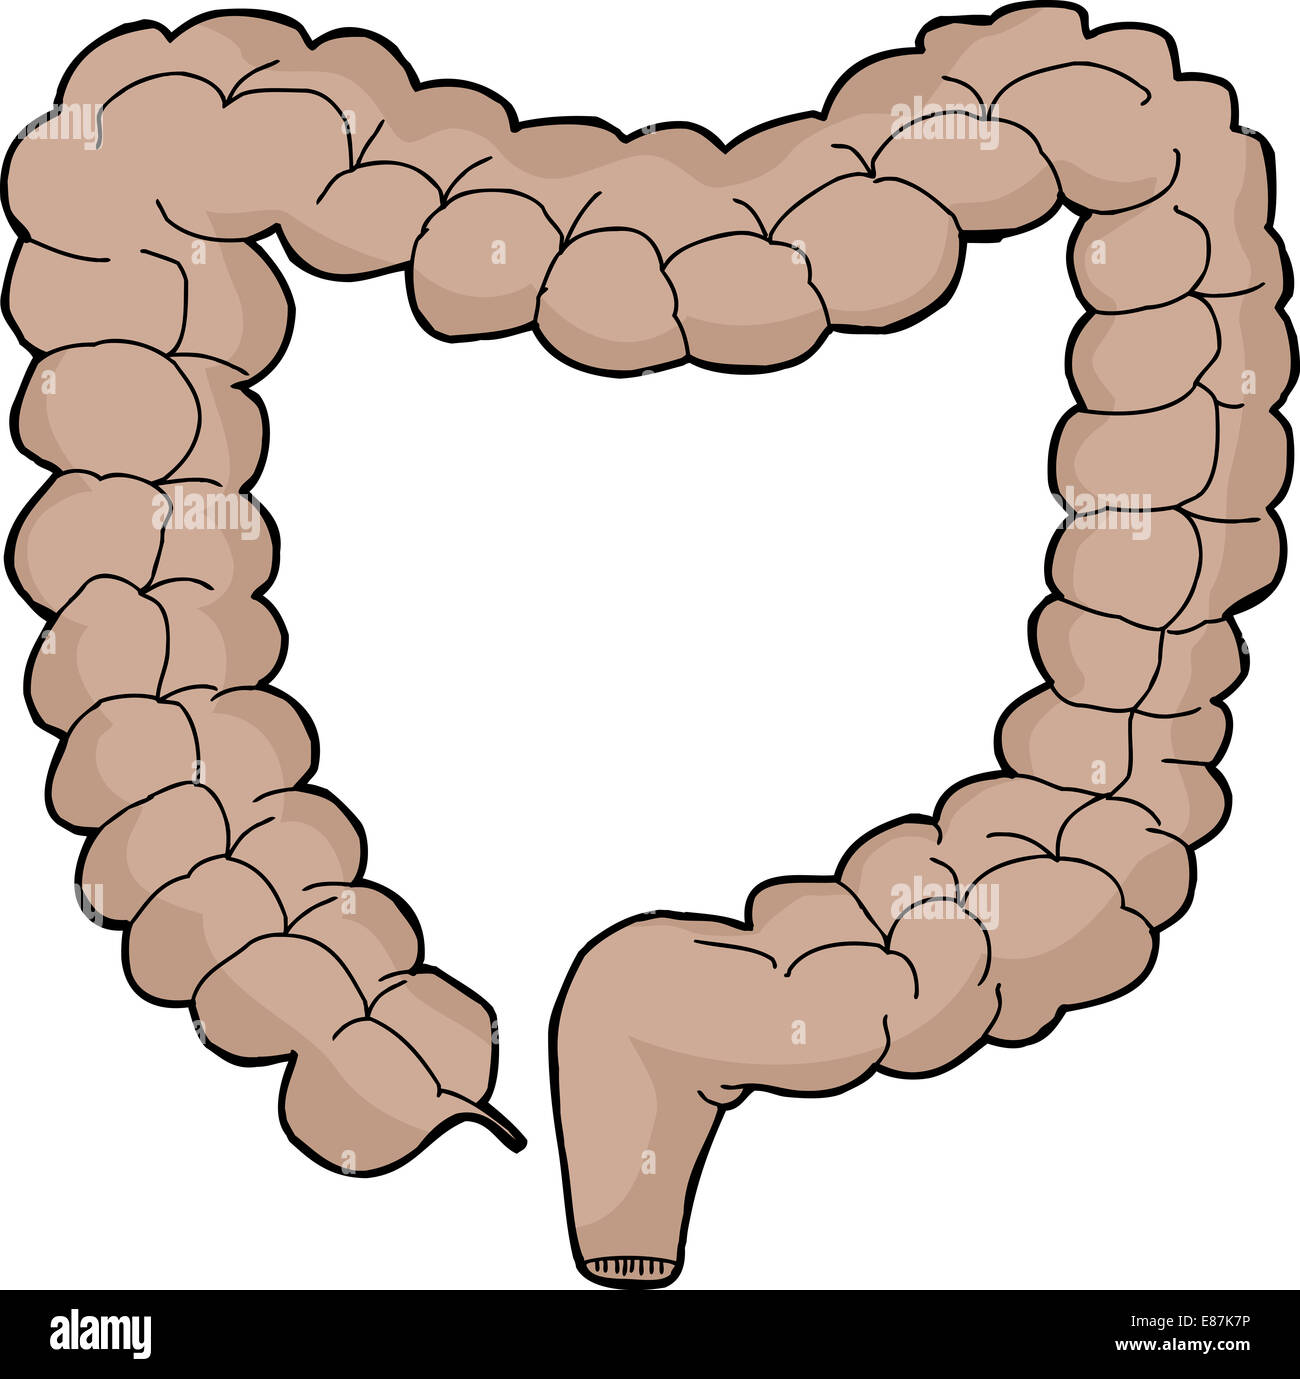 La main isolé du gros intestin humain cartoon Banque D'Images